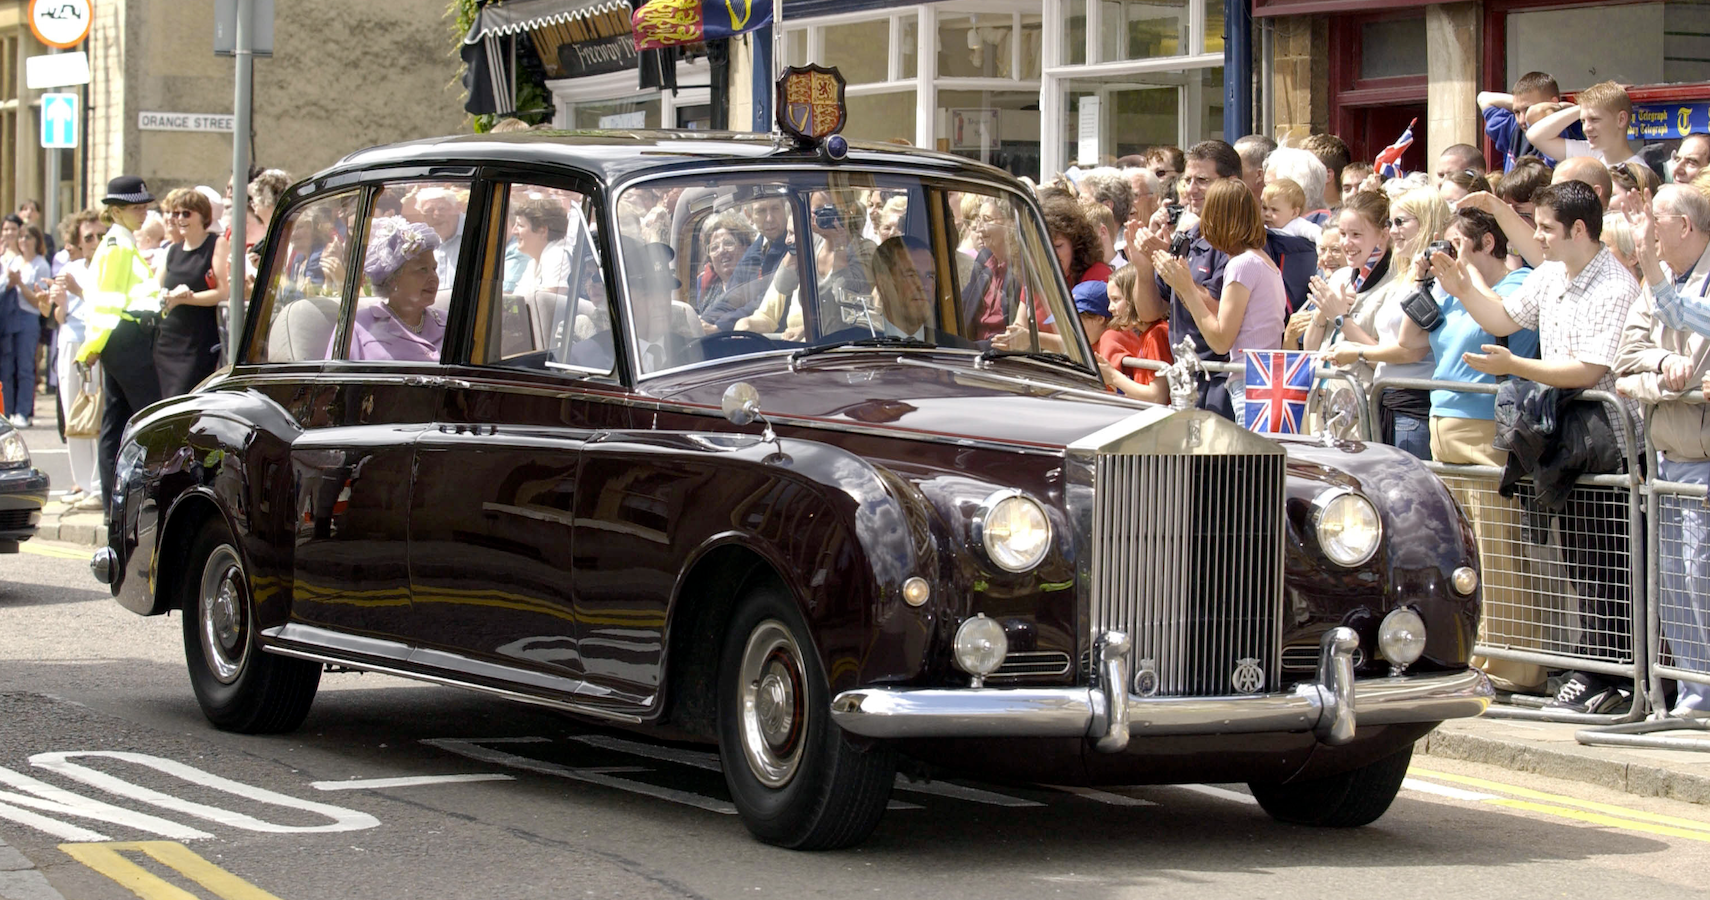 Queen Elizabeth's Cars